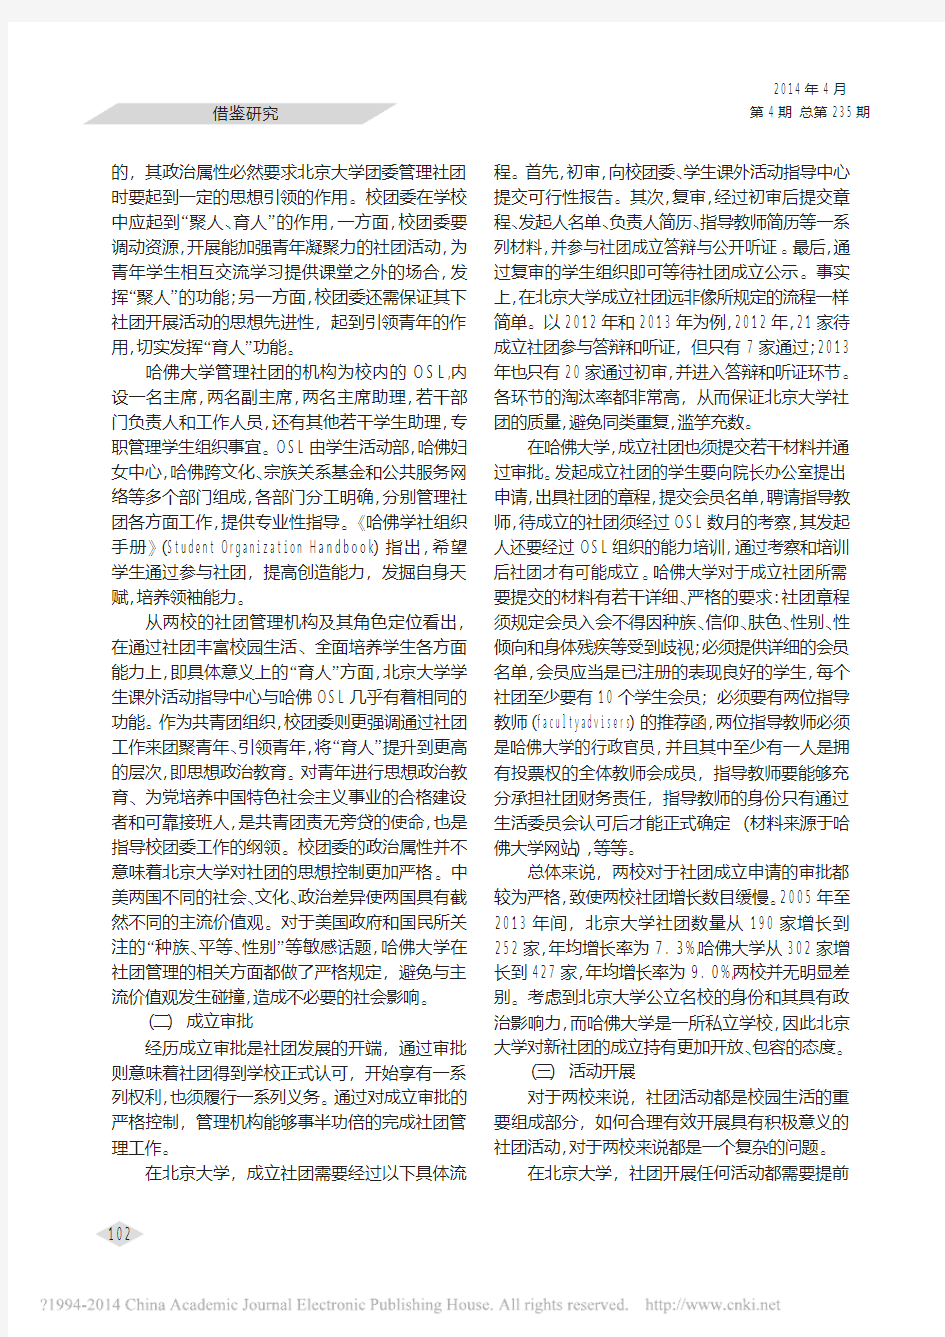 中美高校学生社团对比研究_以北京大学和哈佛大学为例_王逸鸣